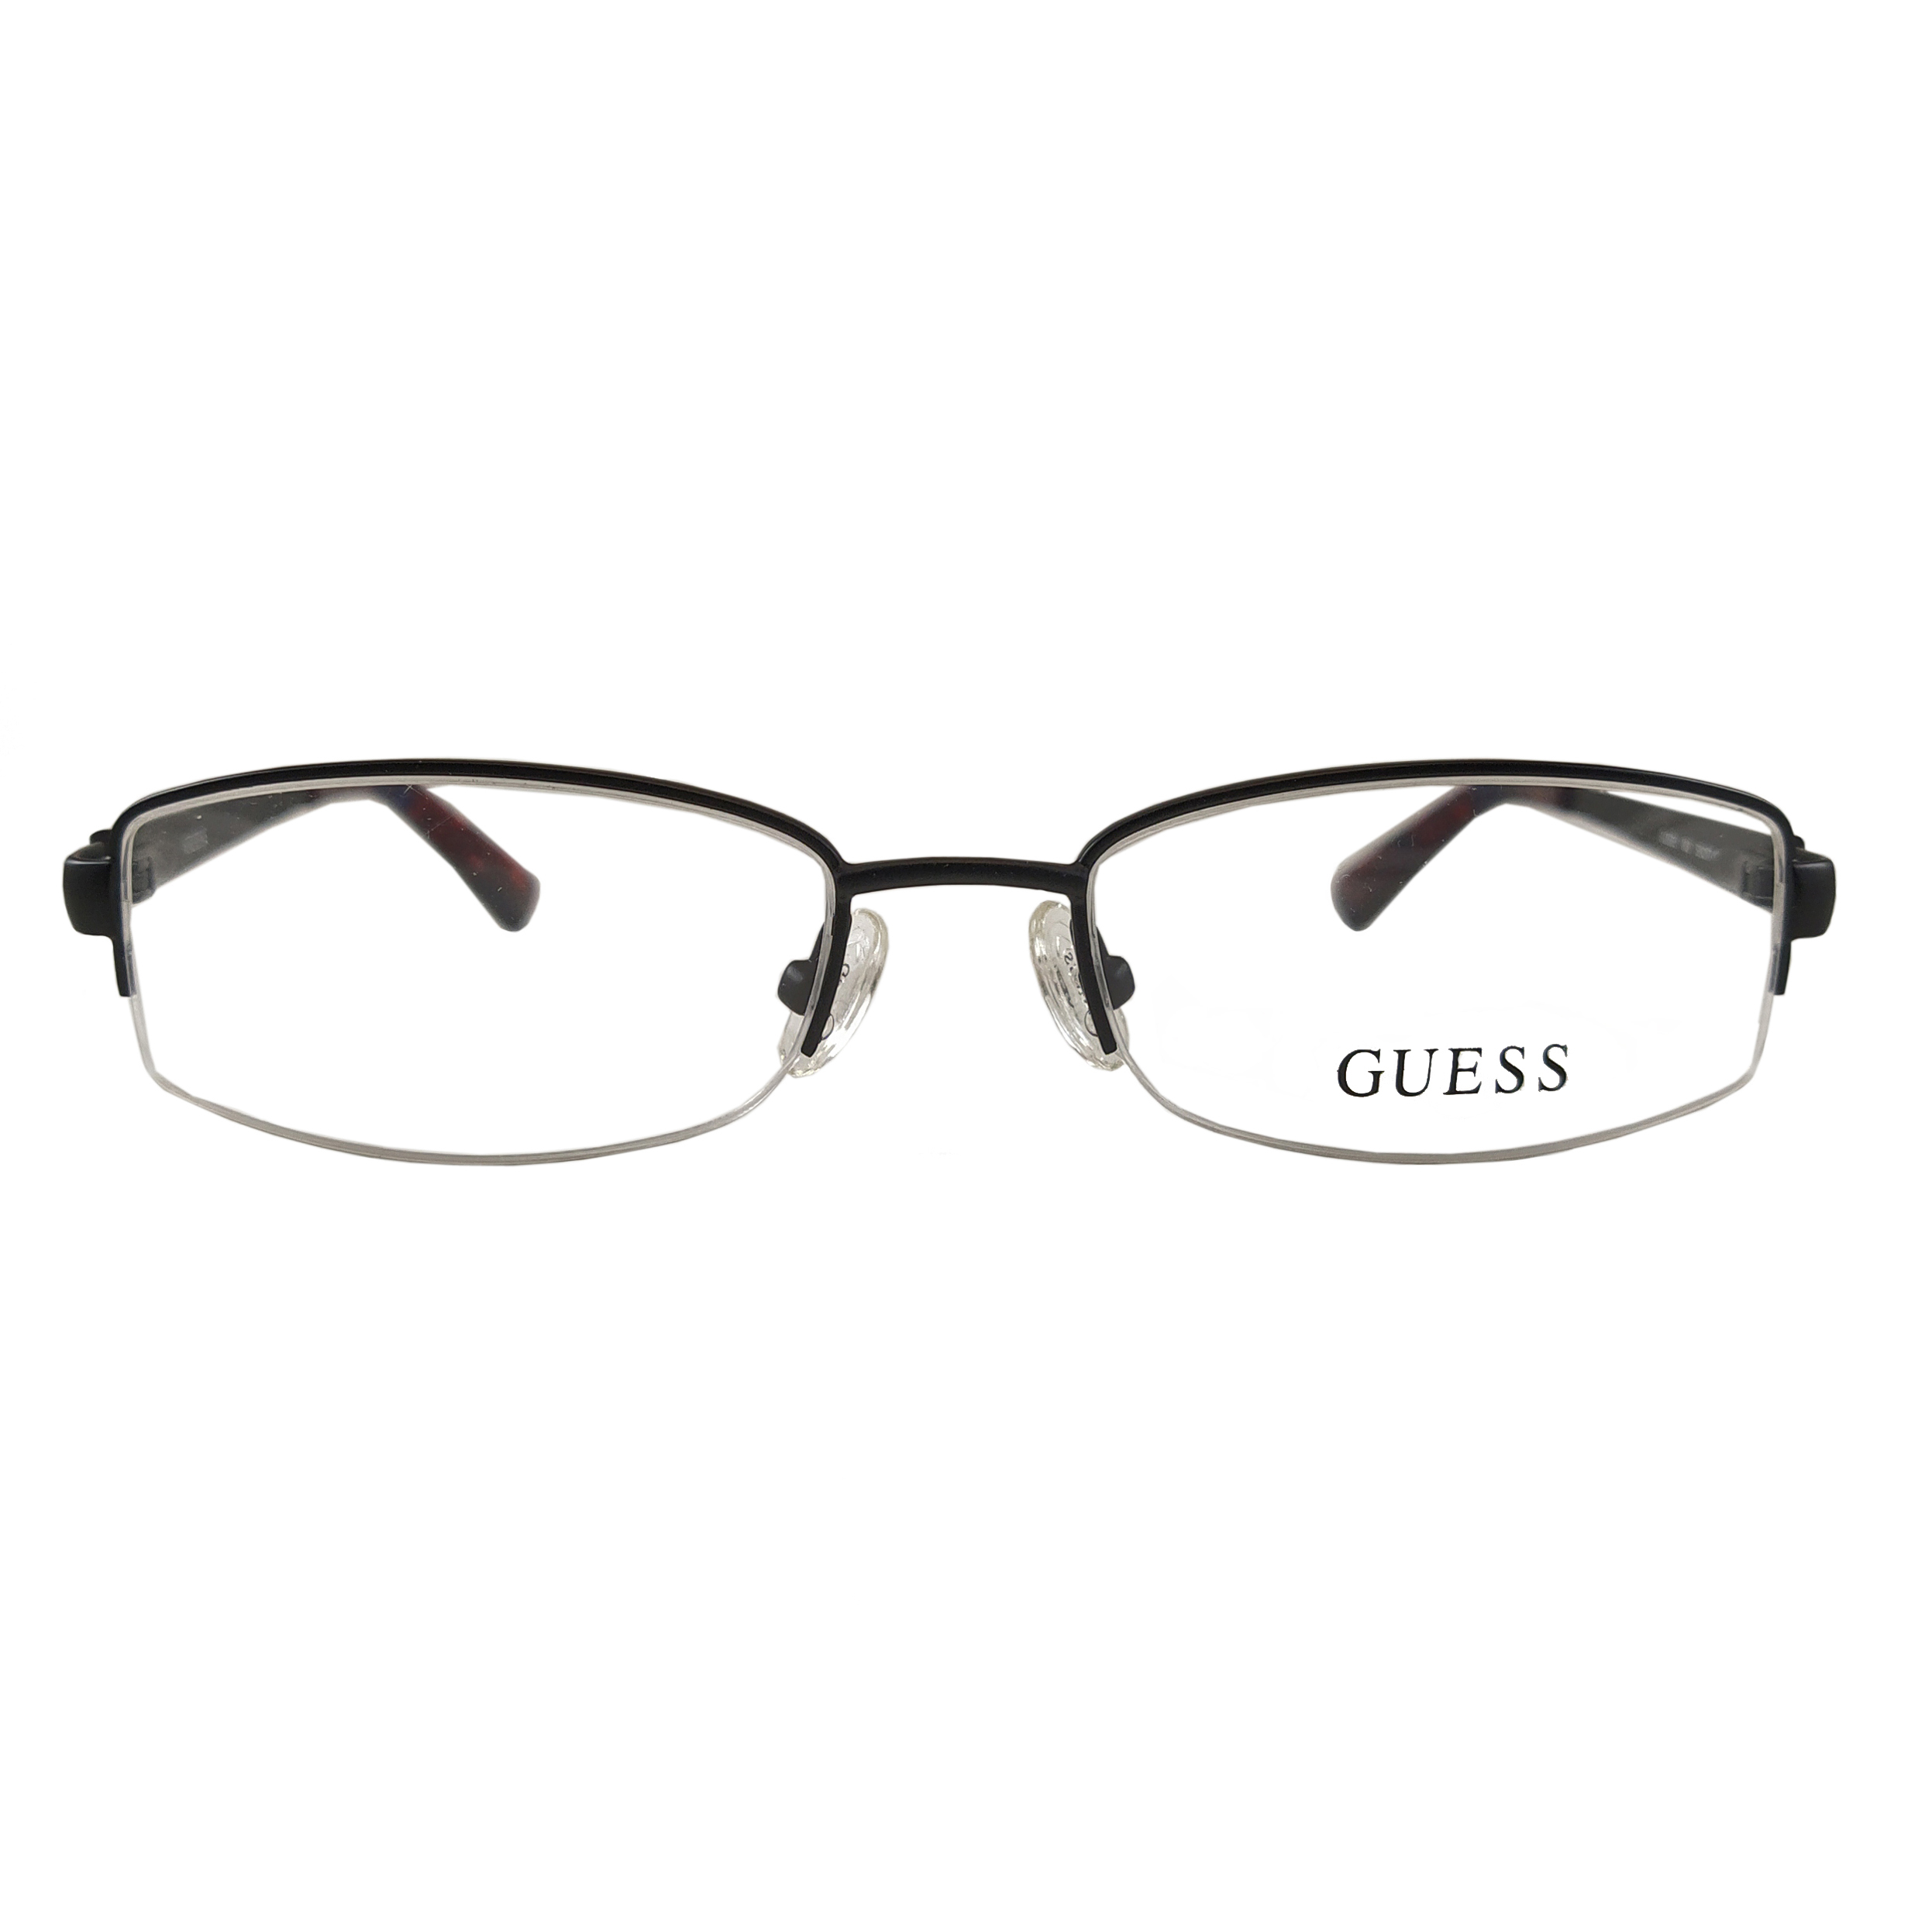 فریم عینک طبی زنانه گس مدل GU252500250